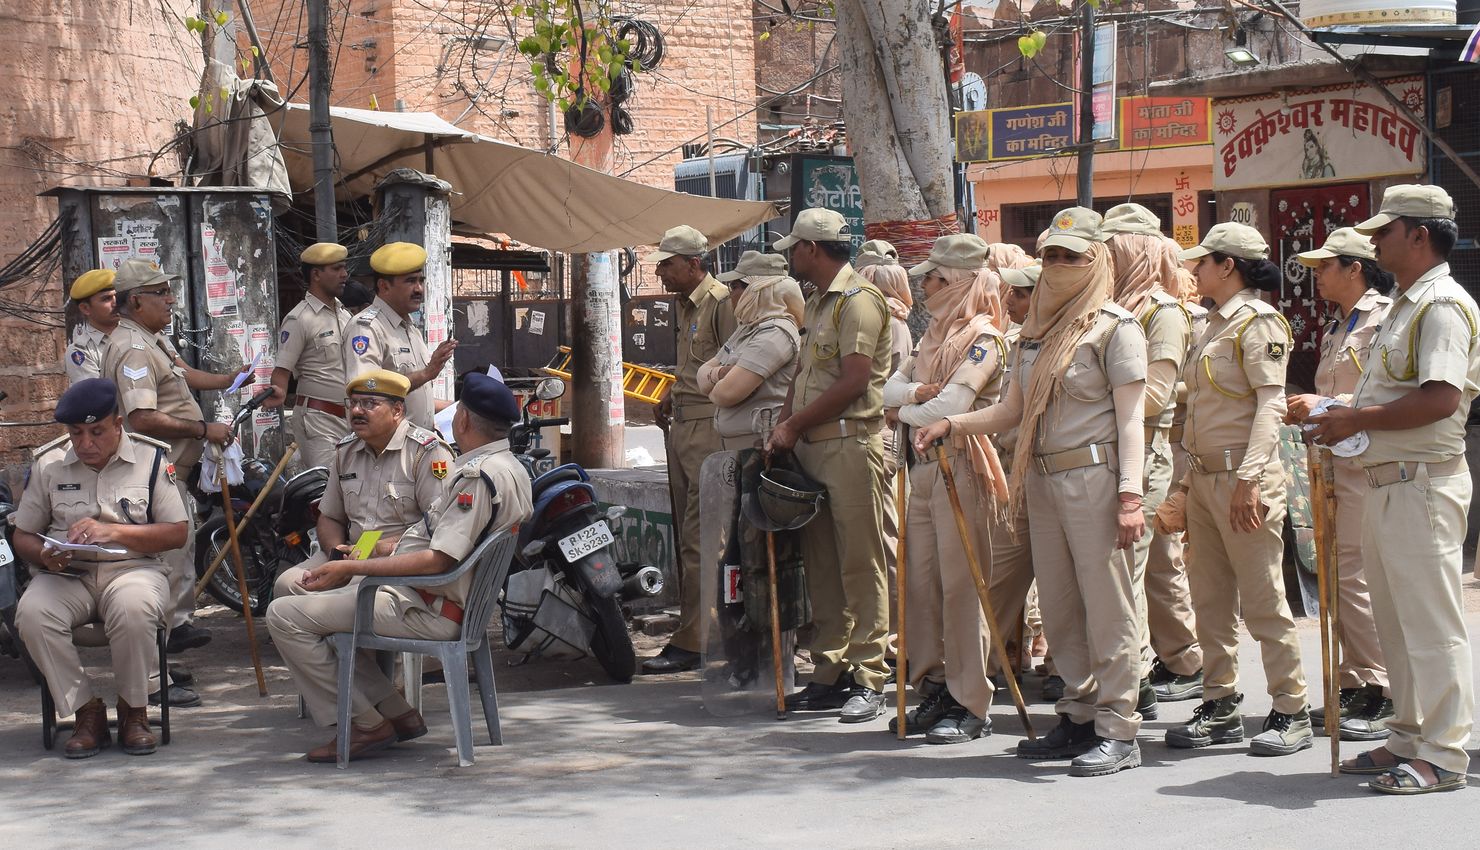 Jodhpur Violence Update - कर्फ्यू के बाद कहीं से कोई अप्रिय वारदात नहीं, फिक्स पिकेट किए तैनात 